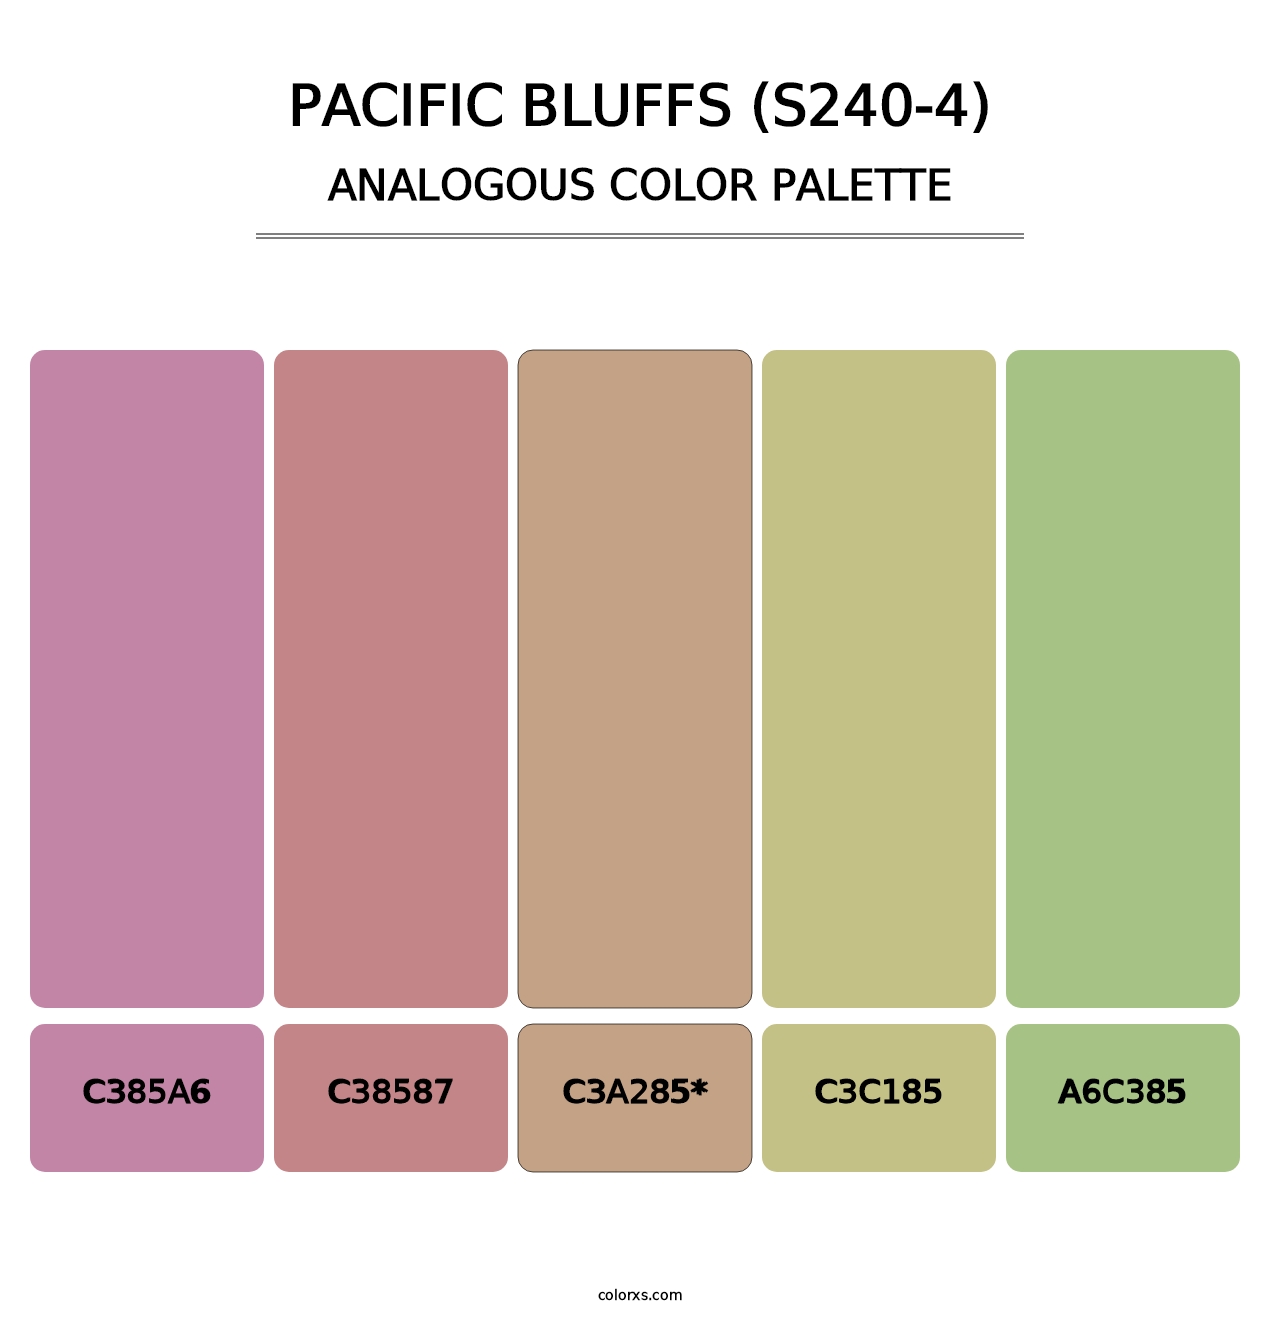 Pacific Bluffs (S240-4) - Analogous Color Palette